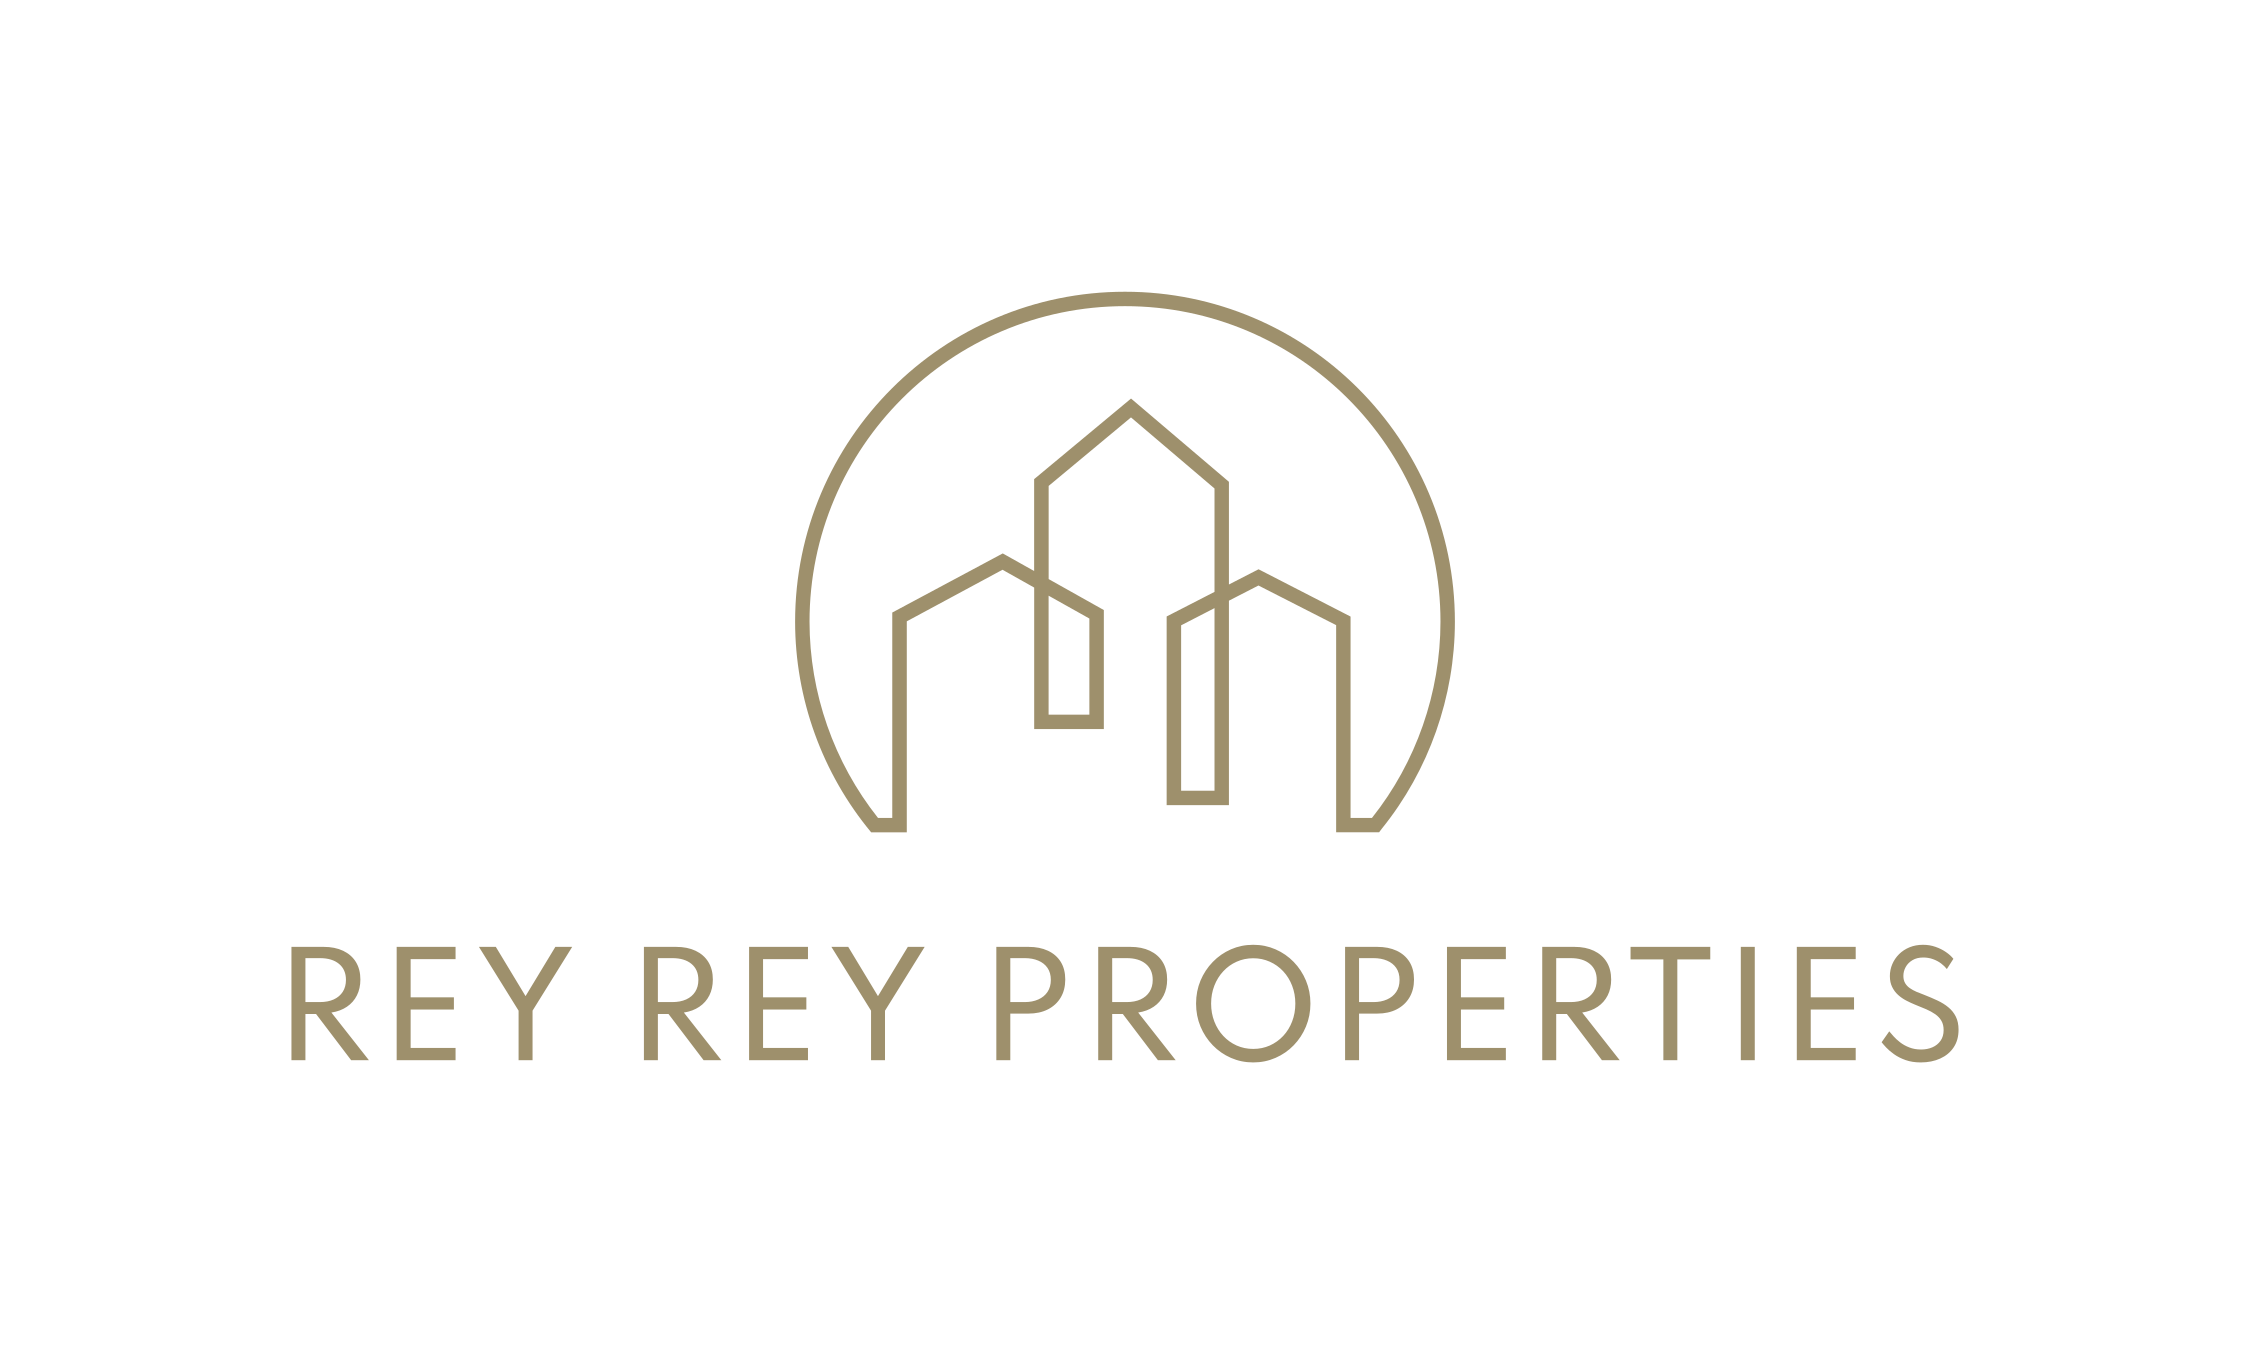 Rey Rey Properties logo